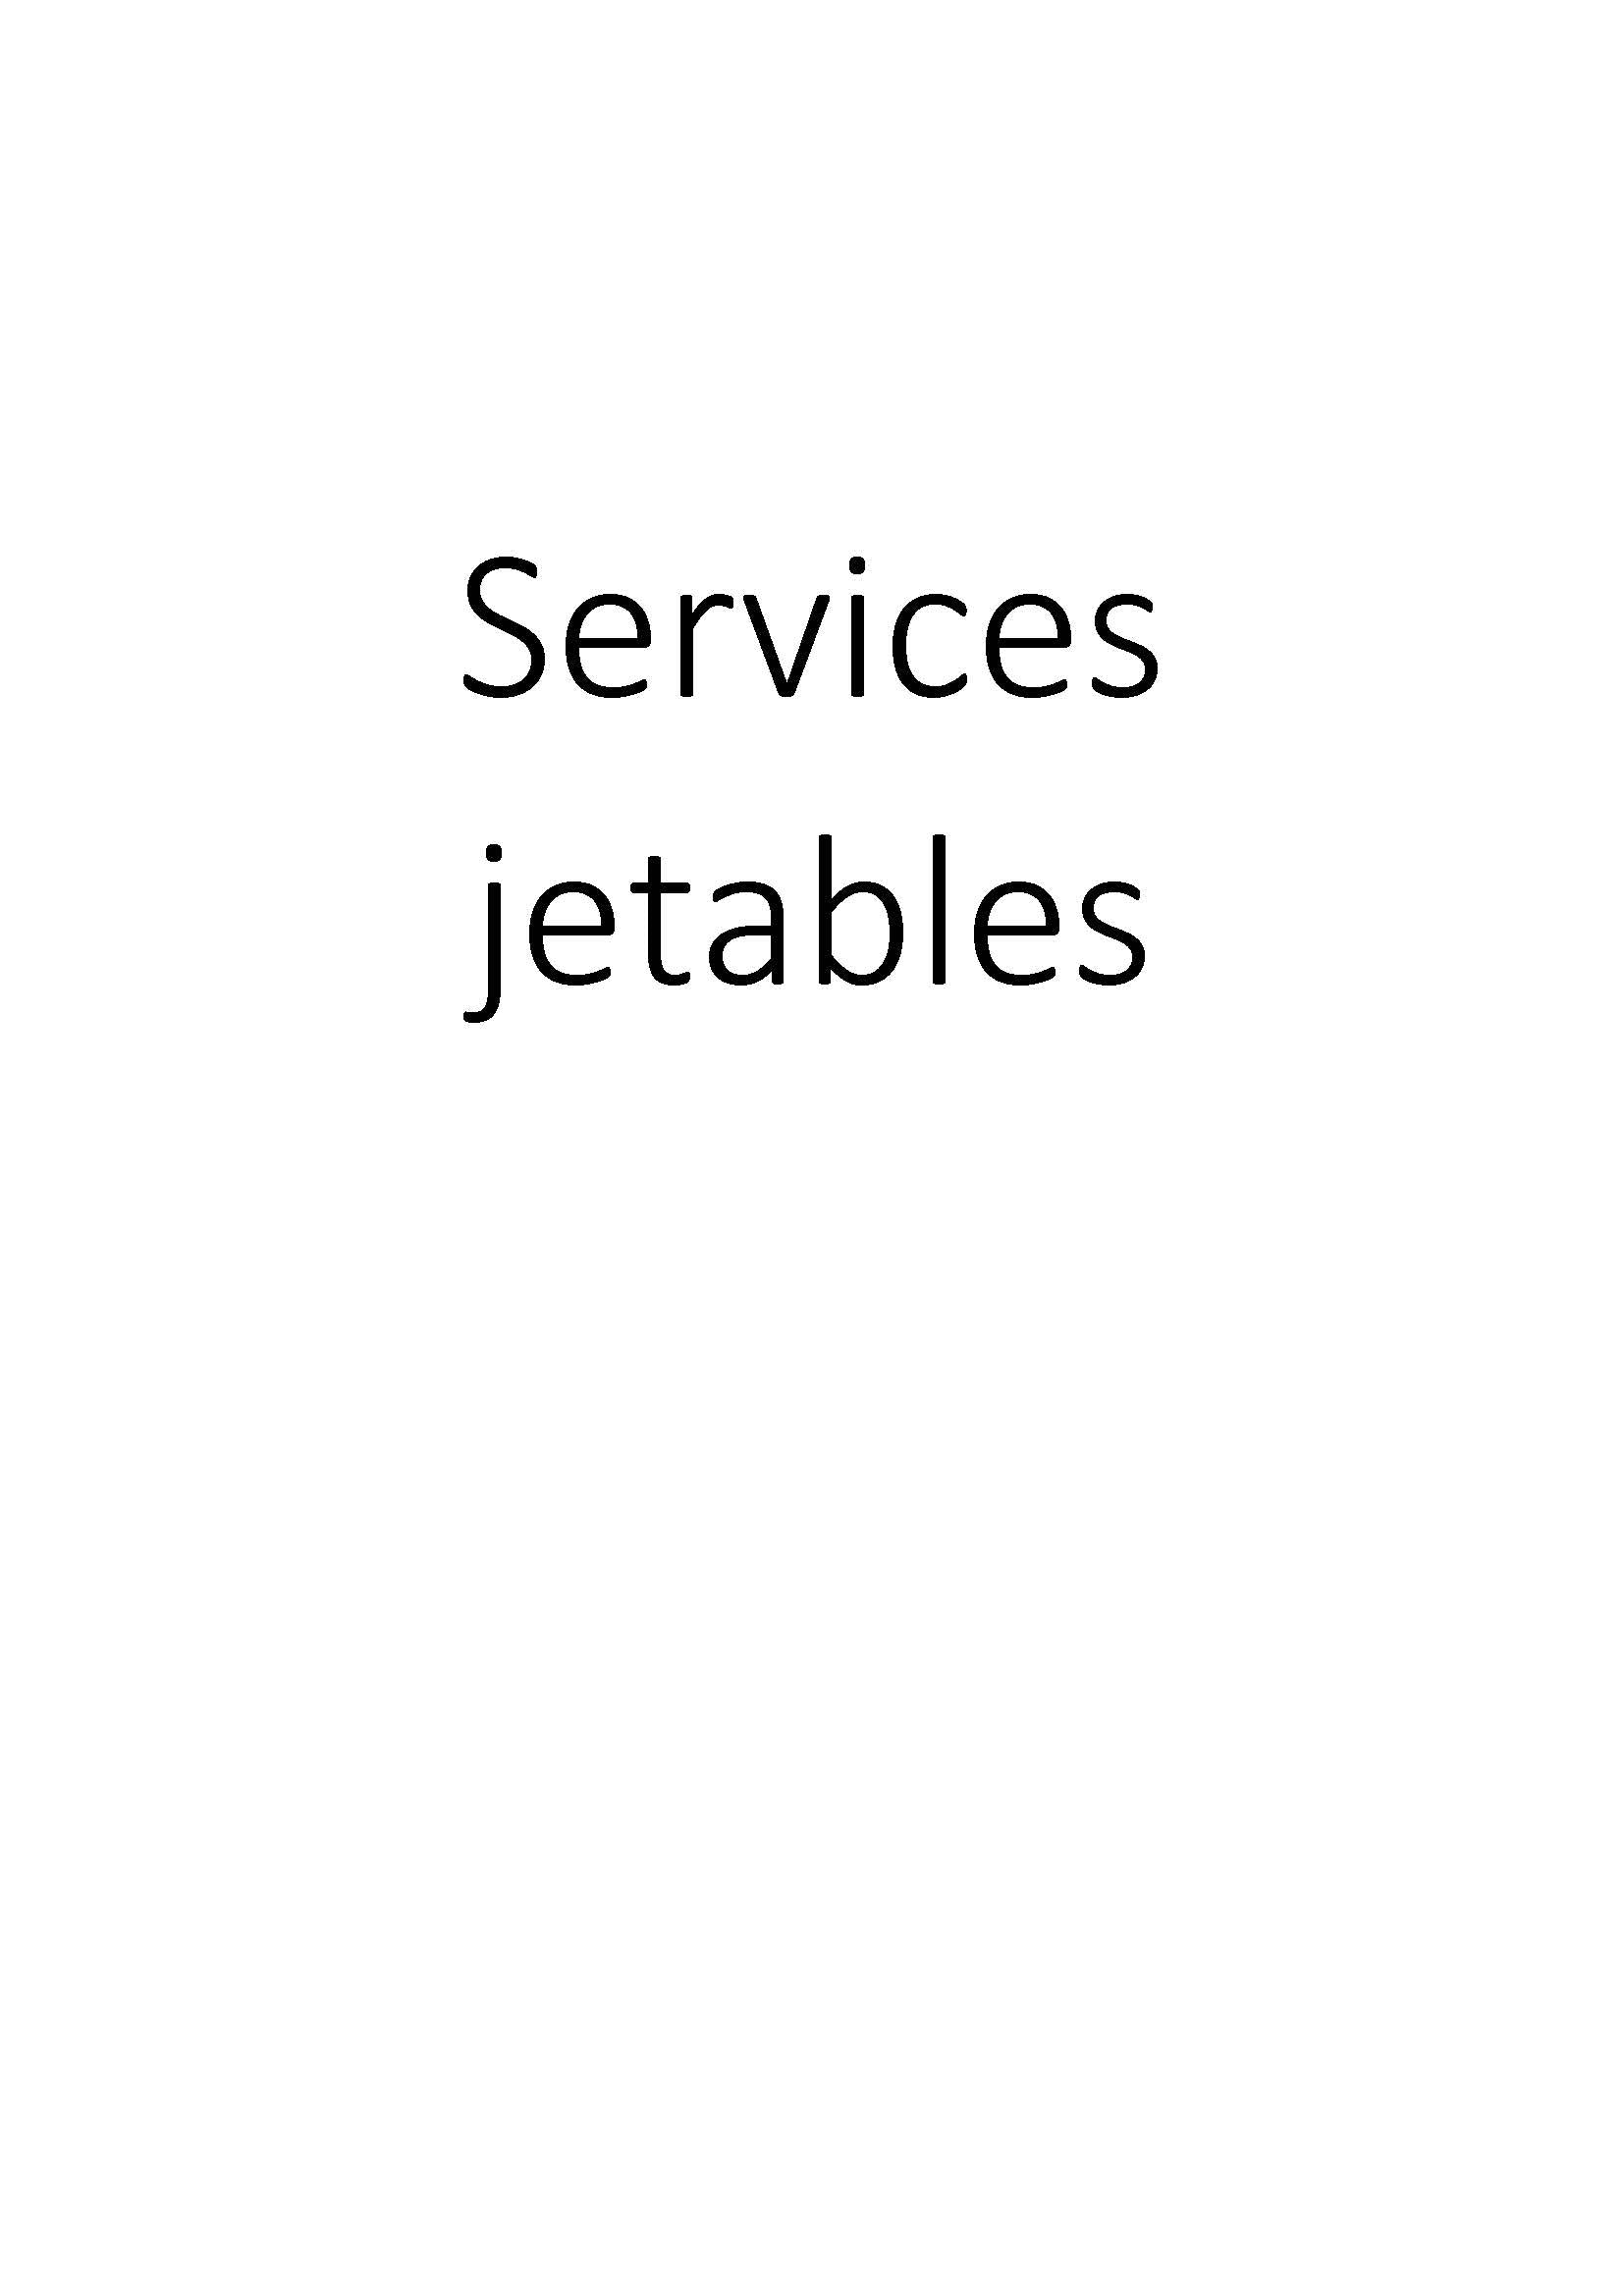 Services jetables clicktofournisseur.com